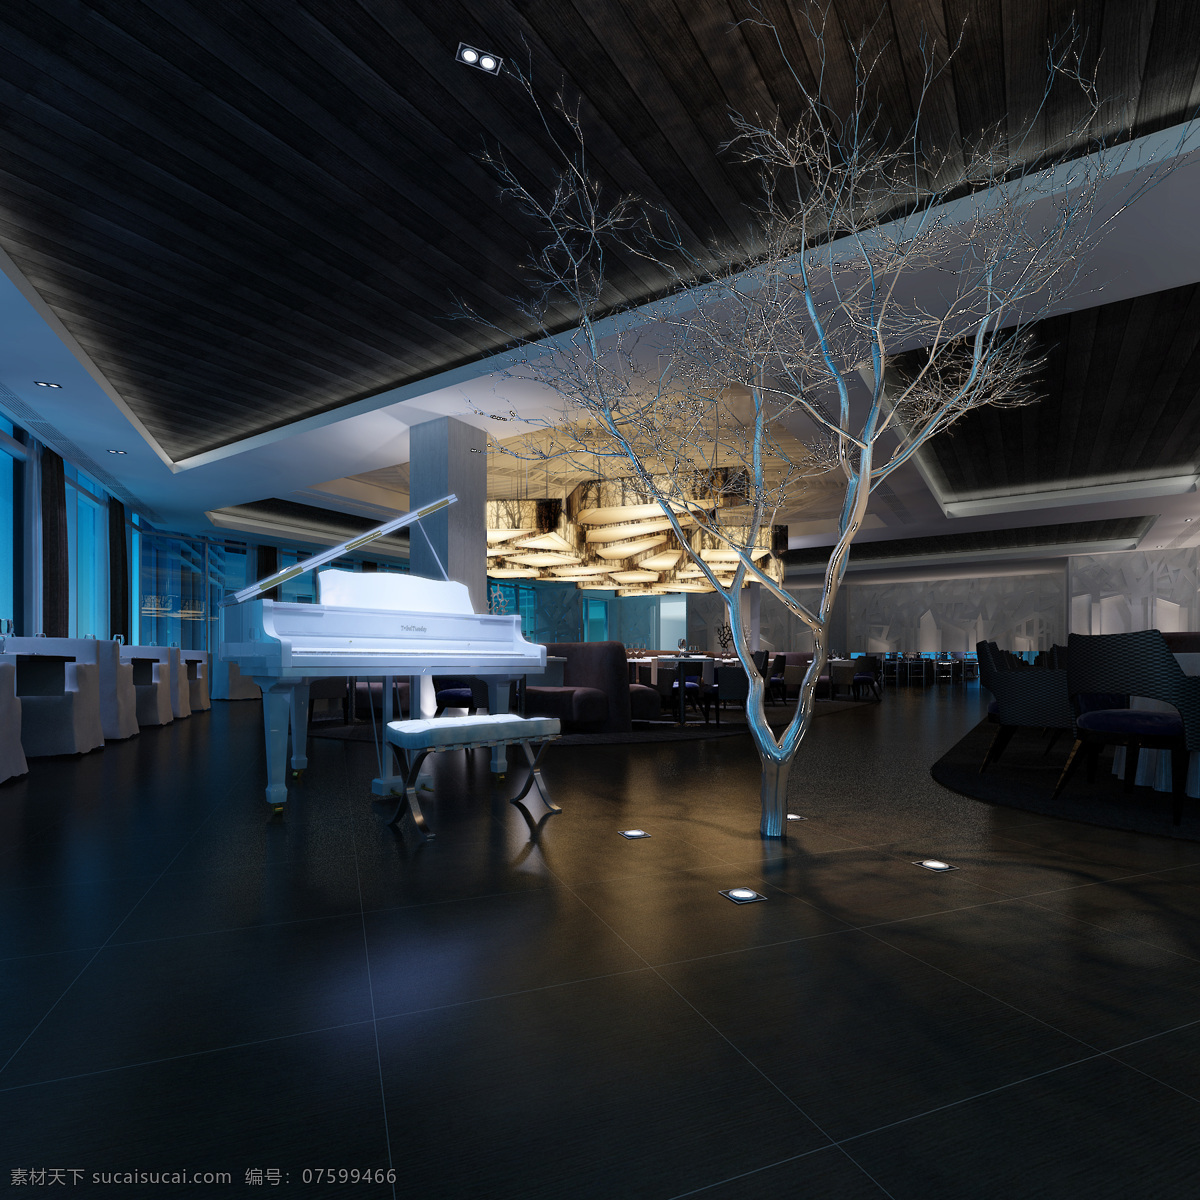 酒吧 灯光 钢琴 环境设计 浪漫 室内设计 树影婆娑 冷暖对比 家居装饰素材